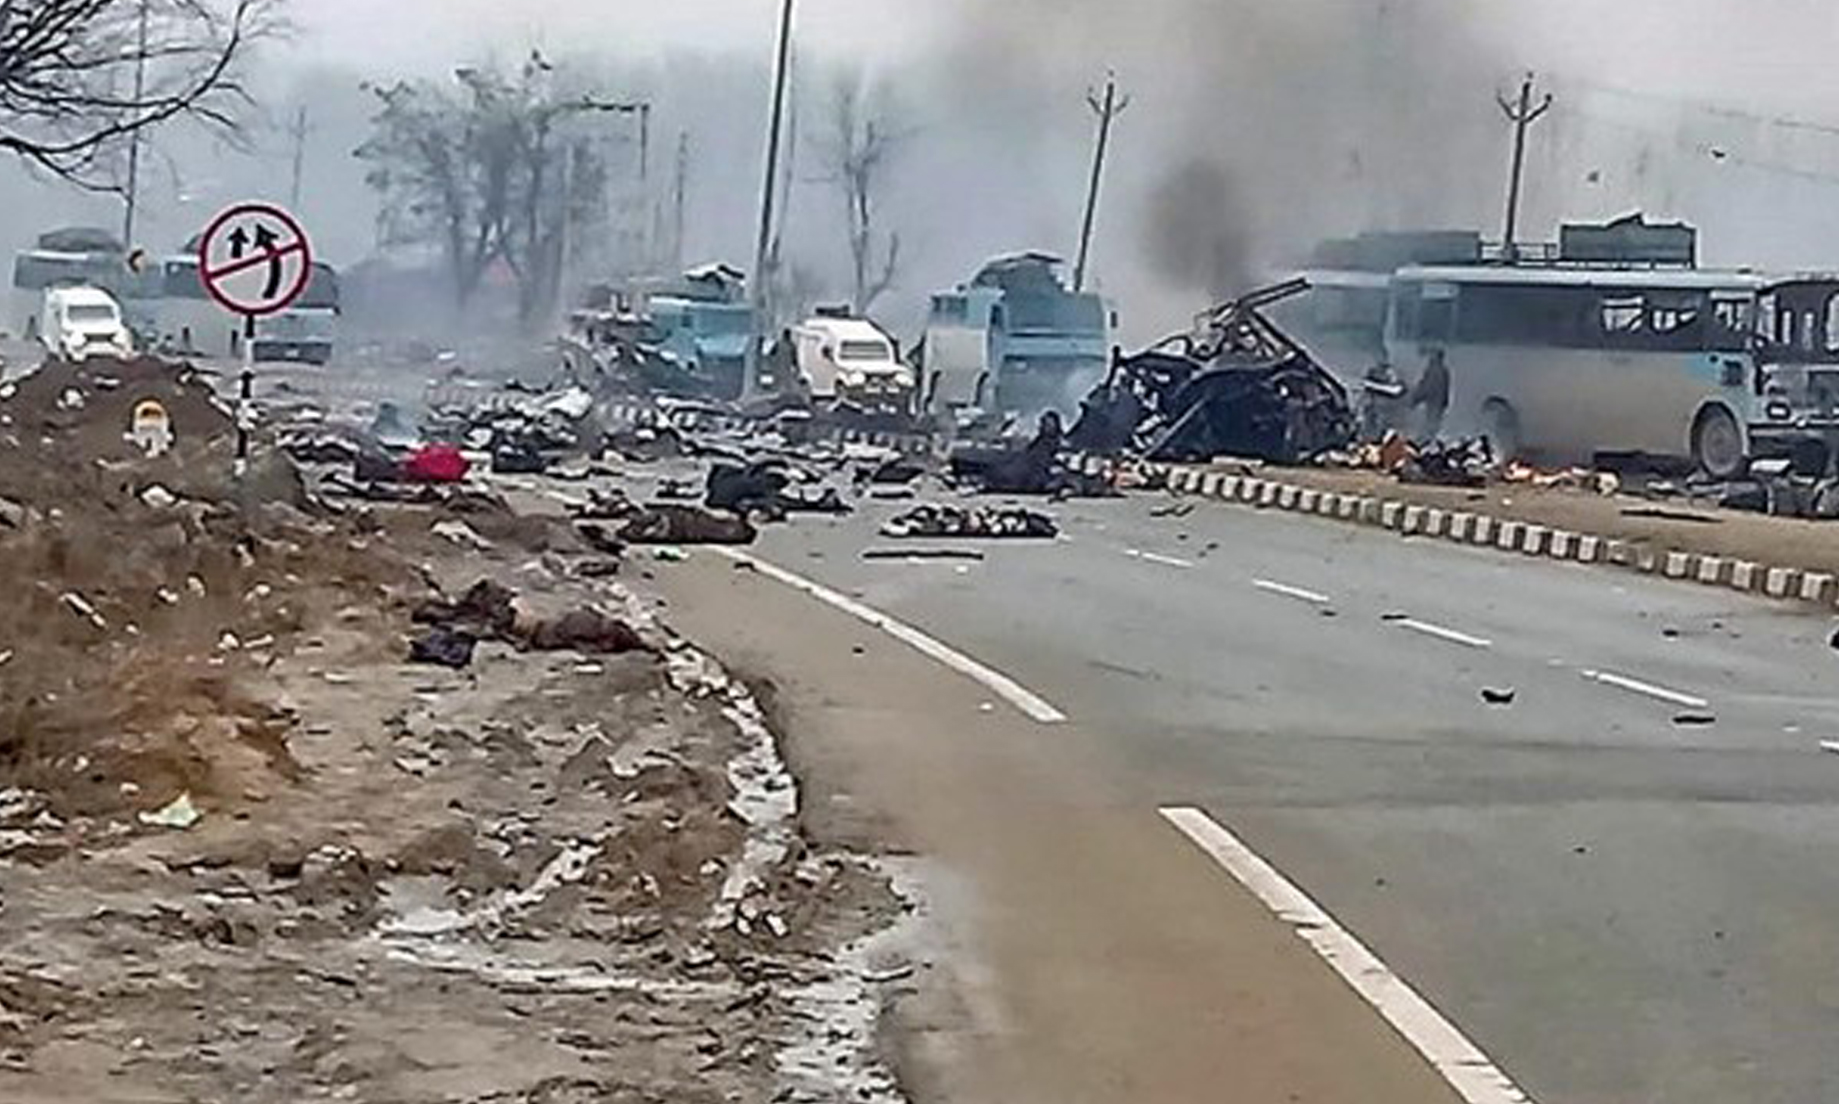 India: Bomb kills 40 Indian paramilitary police in convoy